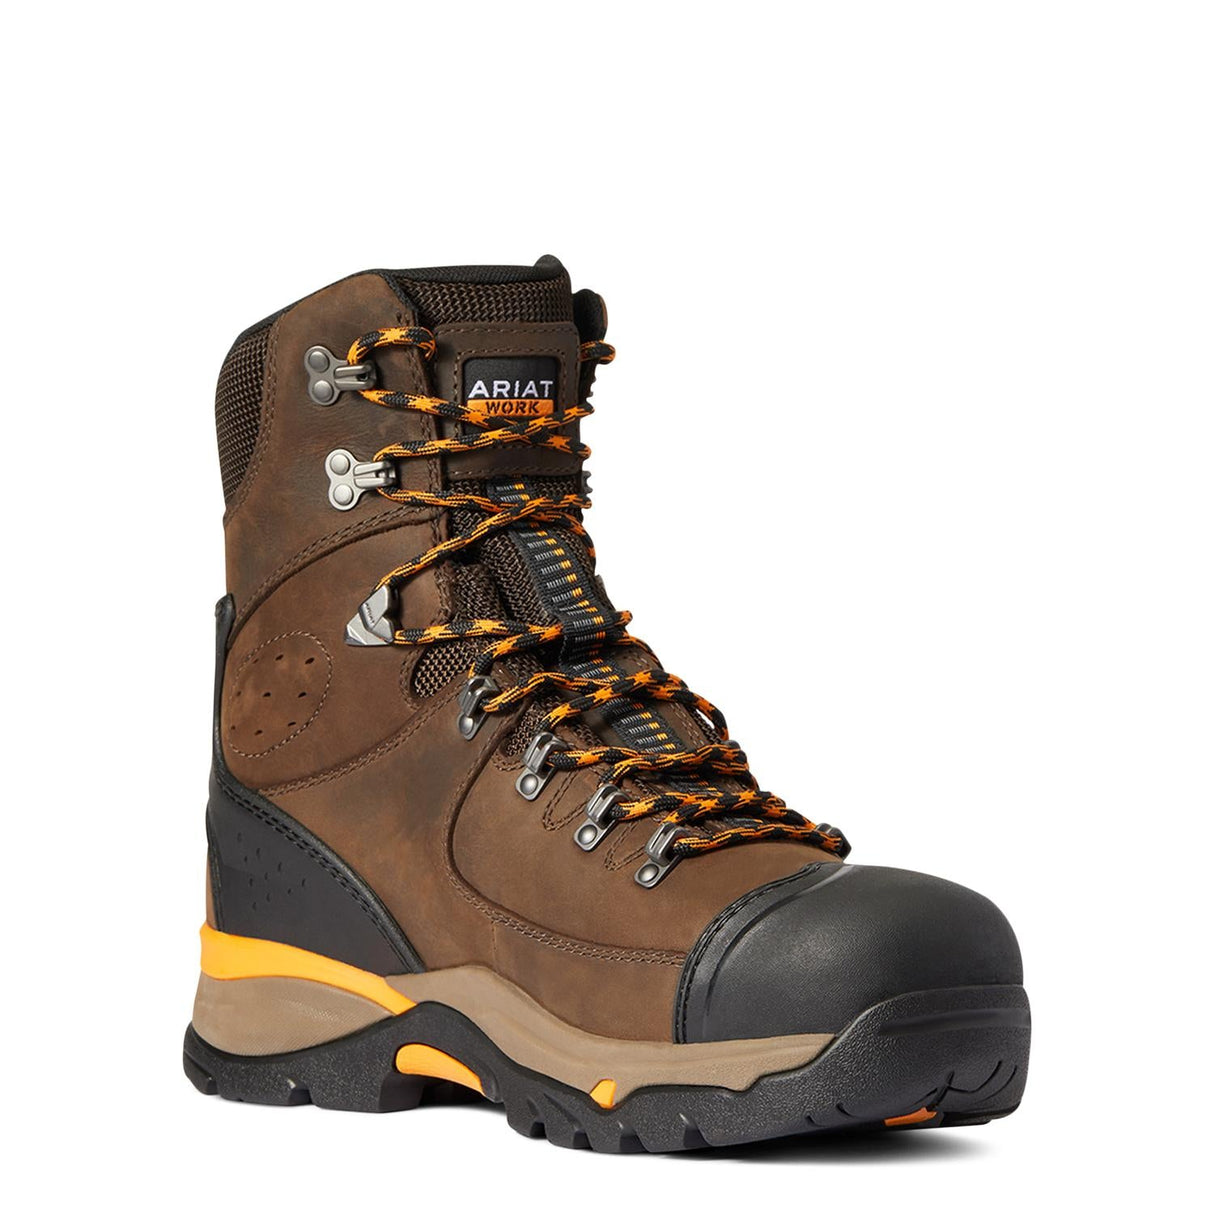 Ariat-Endeavor 8in Waterproof Carbon Toe Work Boot Chocolate Brown-10038373-Steel Toes-3